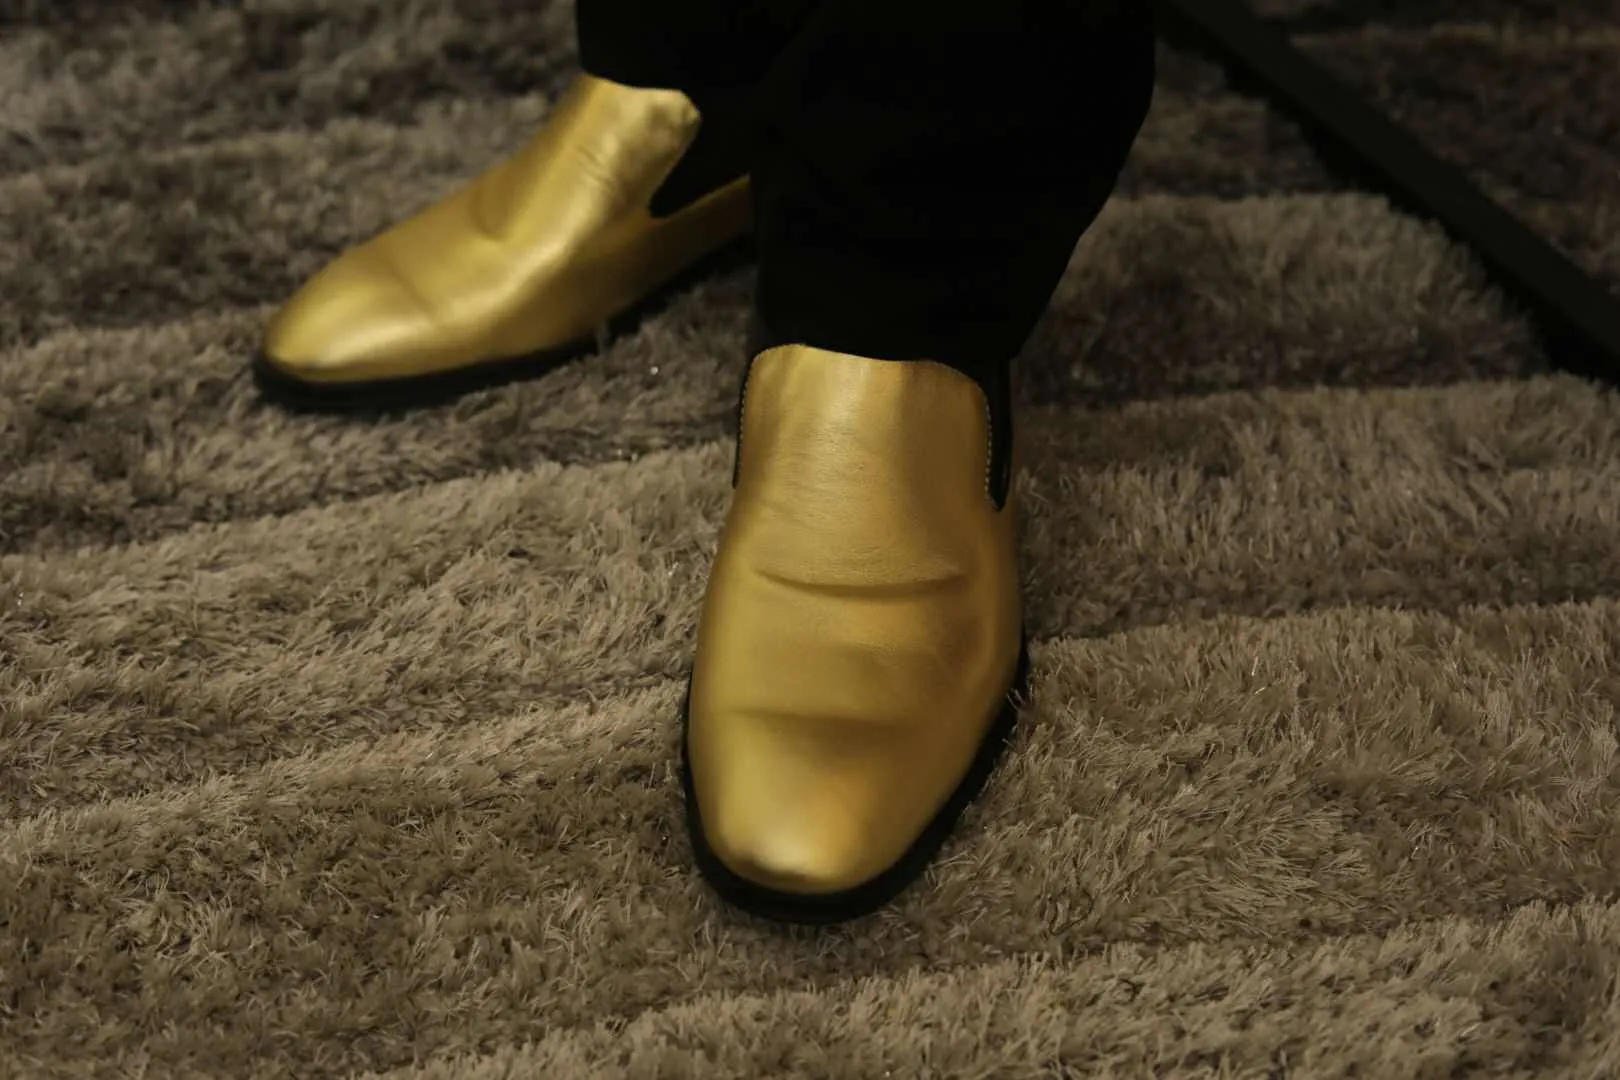 2017 высокое качество простой стиль мужская платье обувь кожаные мокасины мужской партии / свадебные туфли мода пряжки кроссовки скольжения на оксфорды обувь